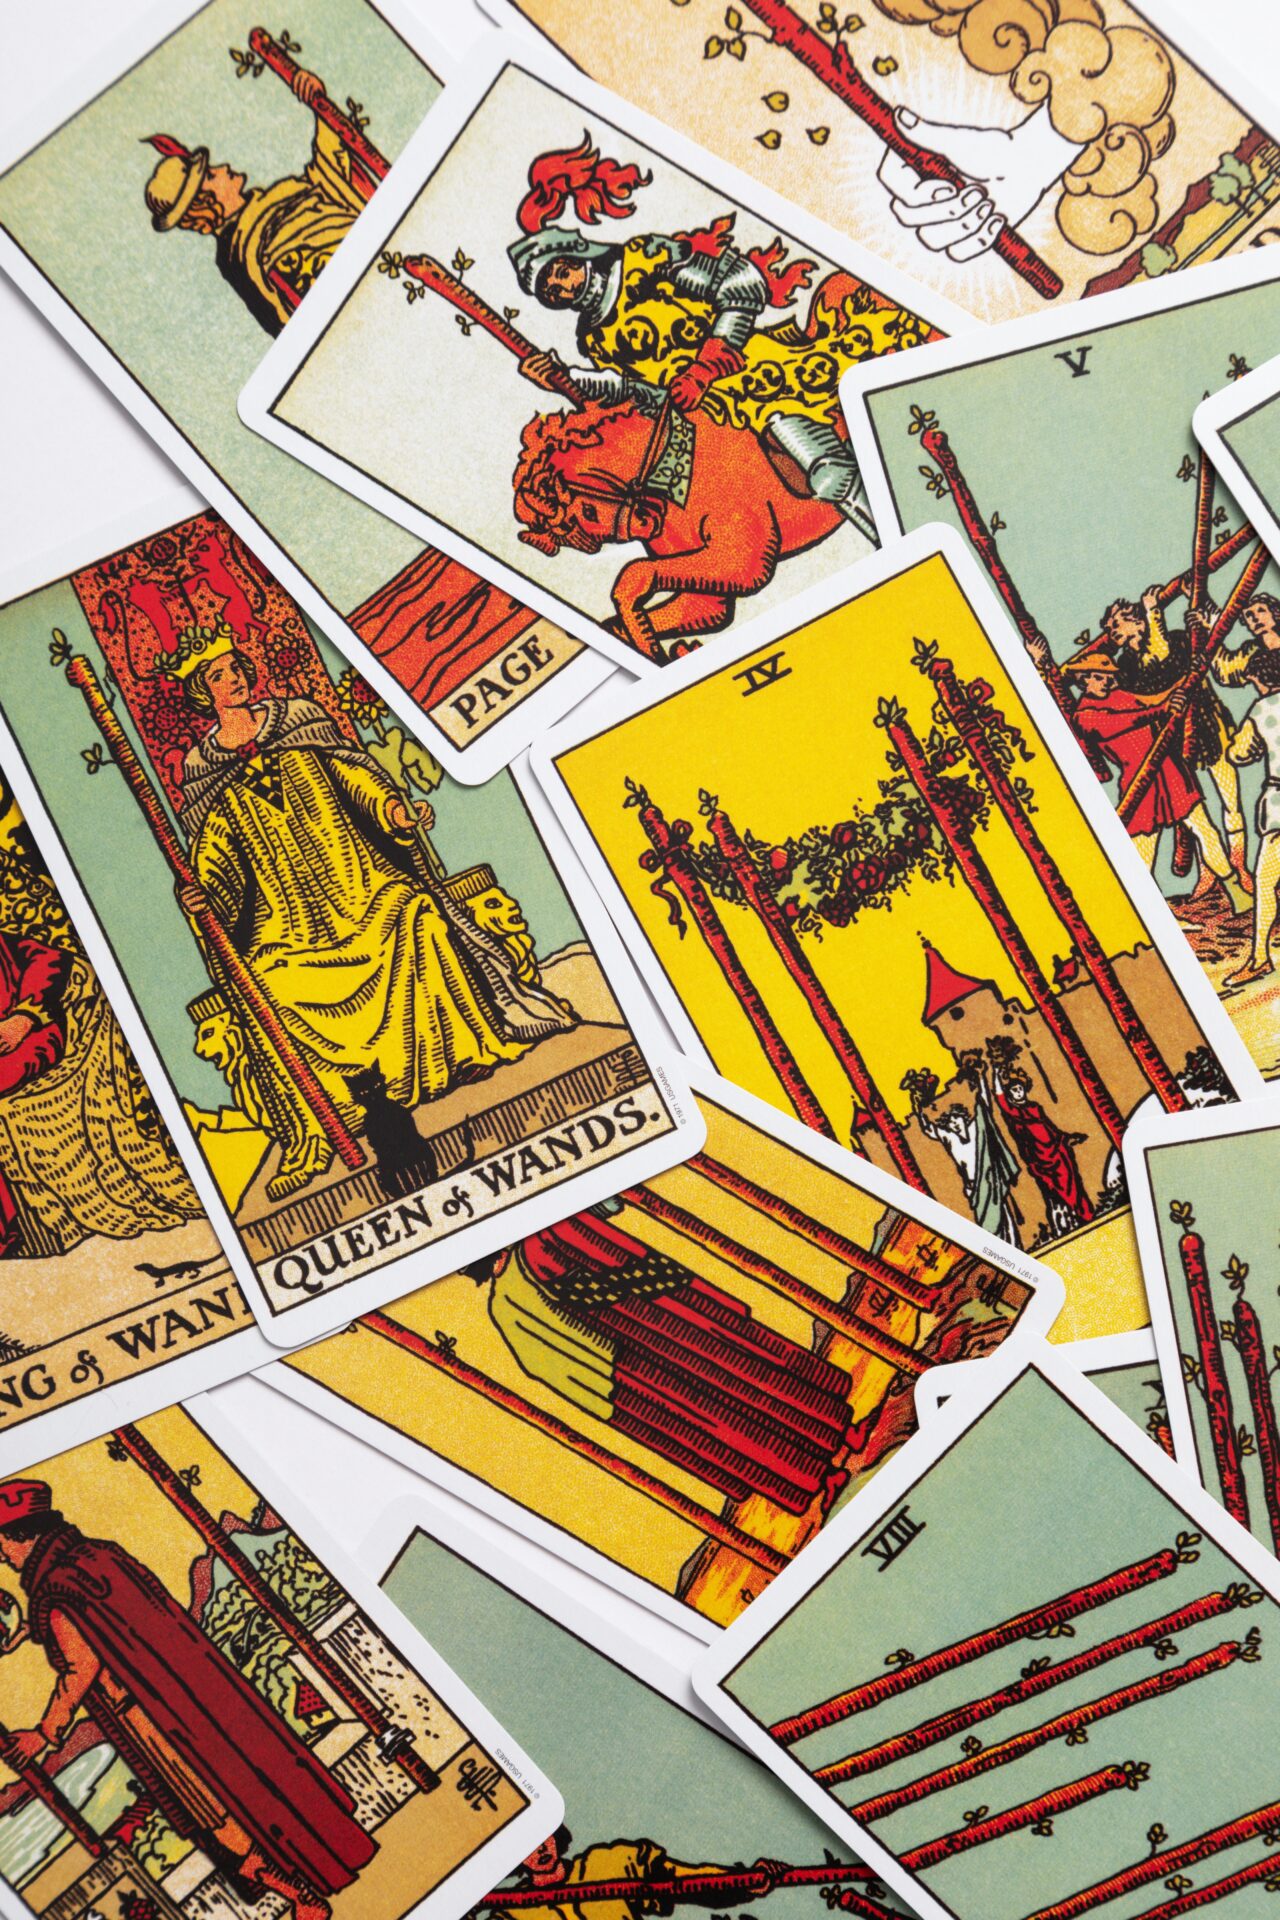 Sfeerbeeld van verschillende tarotkaarten uit het Rider Waite-deck die over elkaar heen liggen.